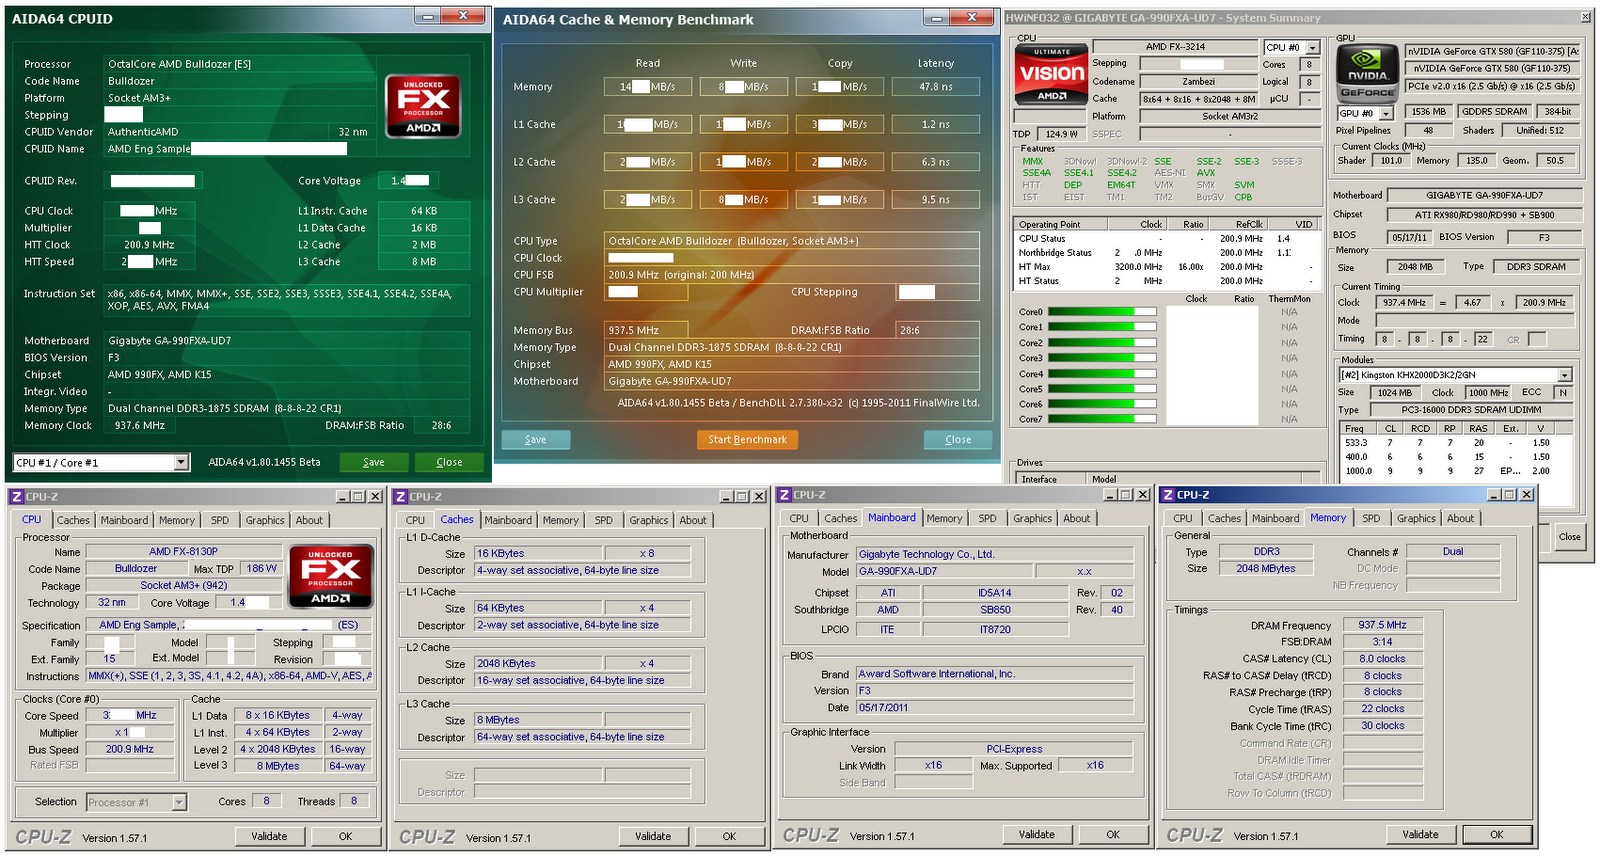 Immagine pubblicata in relazione al seguente contenuto: Foto e benchmark della cpu a 8 core Bulldozer di AMD | Nome immagine: news15282_2.png